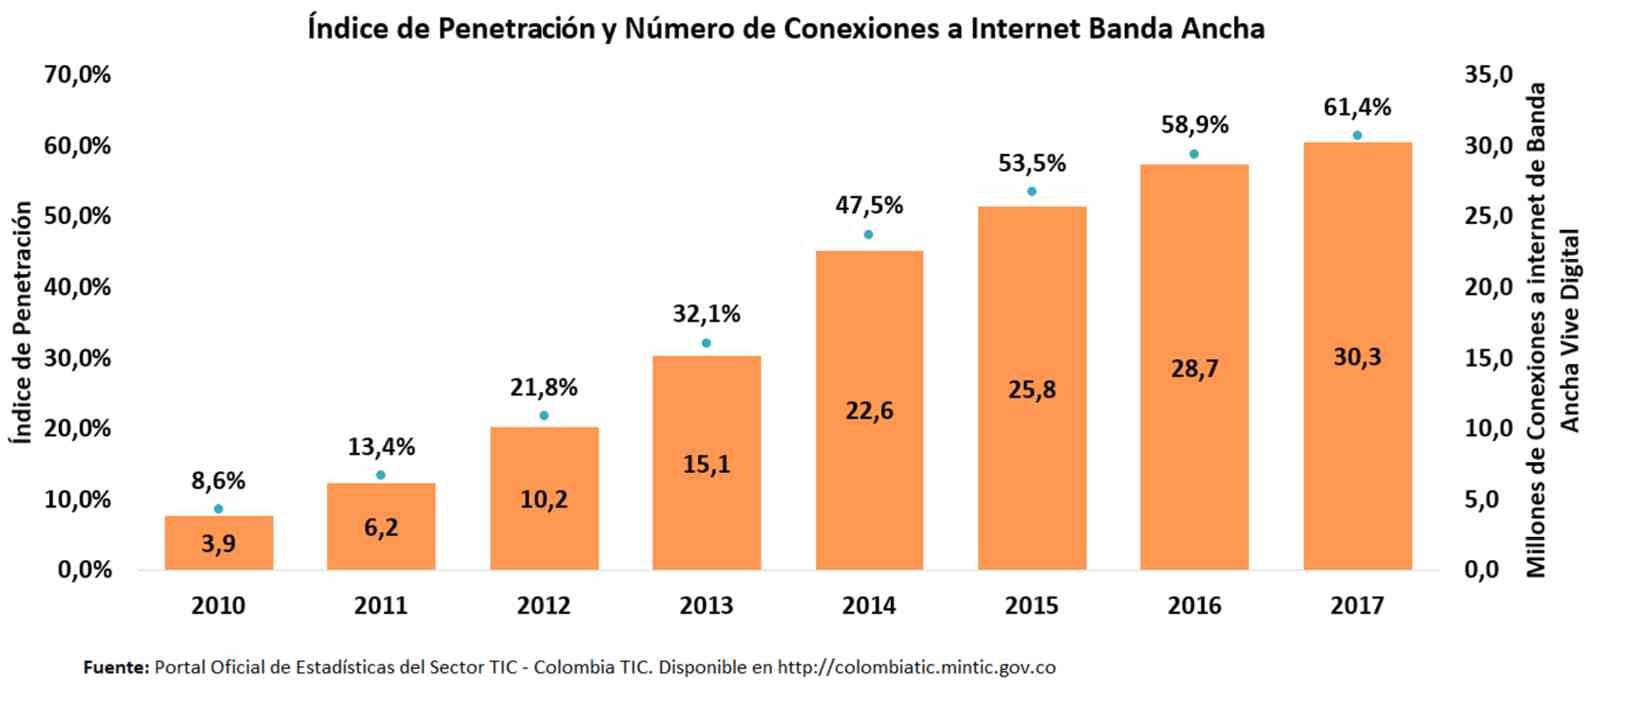 Gráfico en el que se muestra el índice de penetración y número de conexiones a internet banda ancha